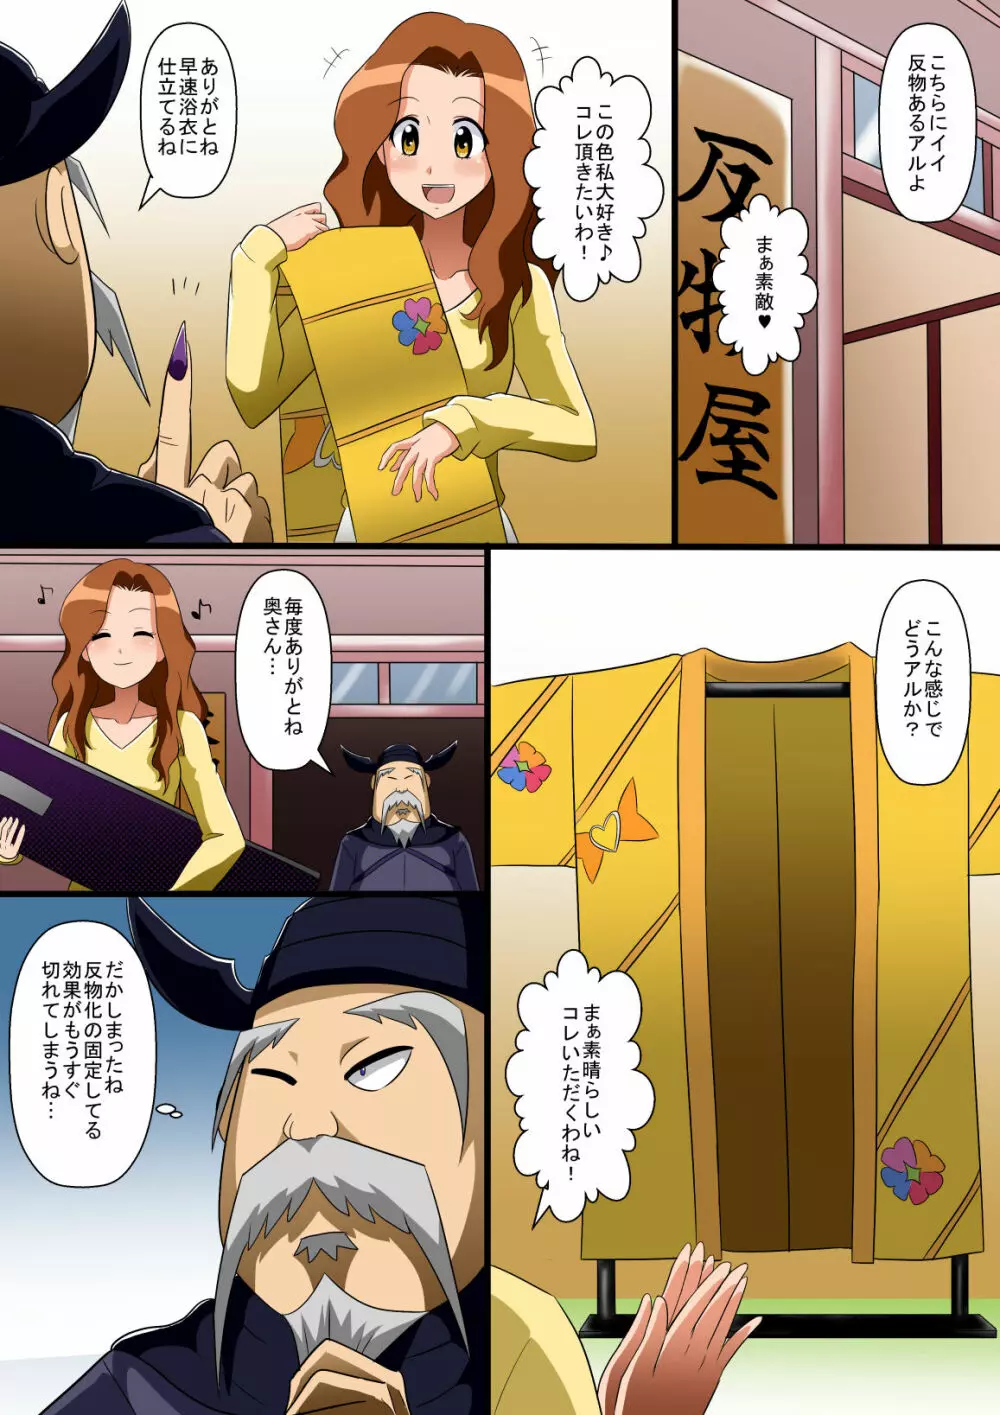 状態変化漫画vol.6〜変身ヒーローを色んな”物”に変えてみた〜 10ページ